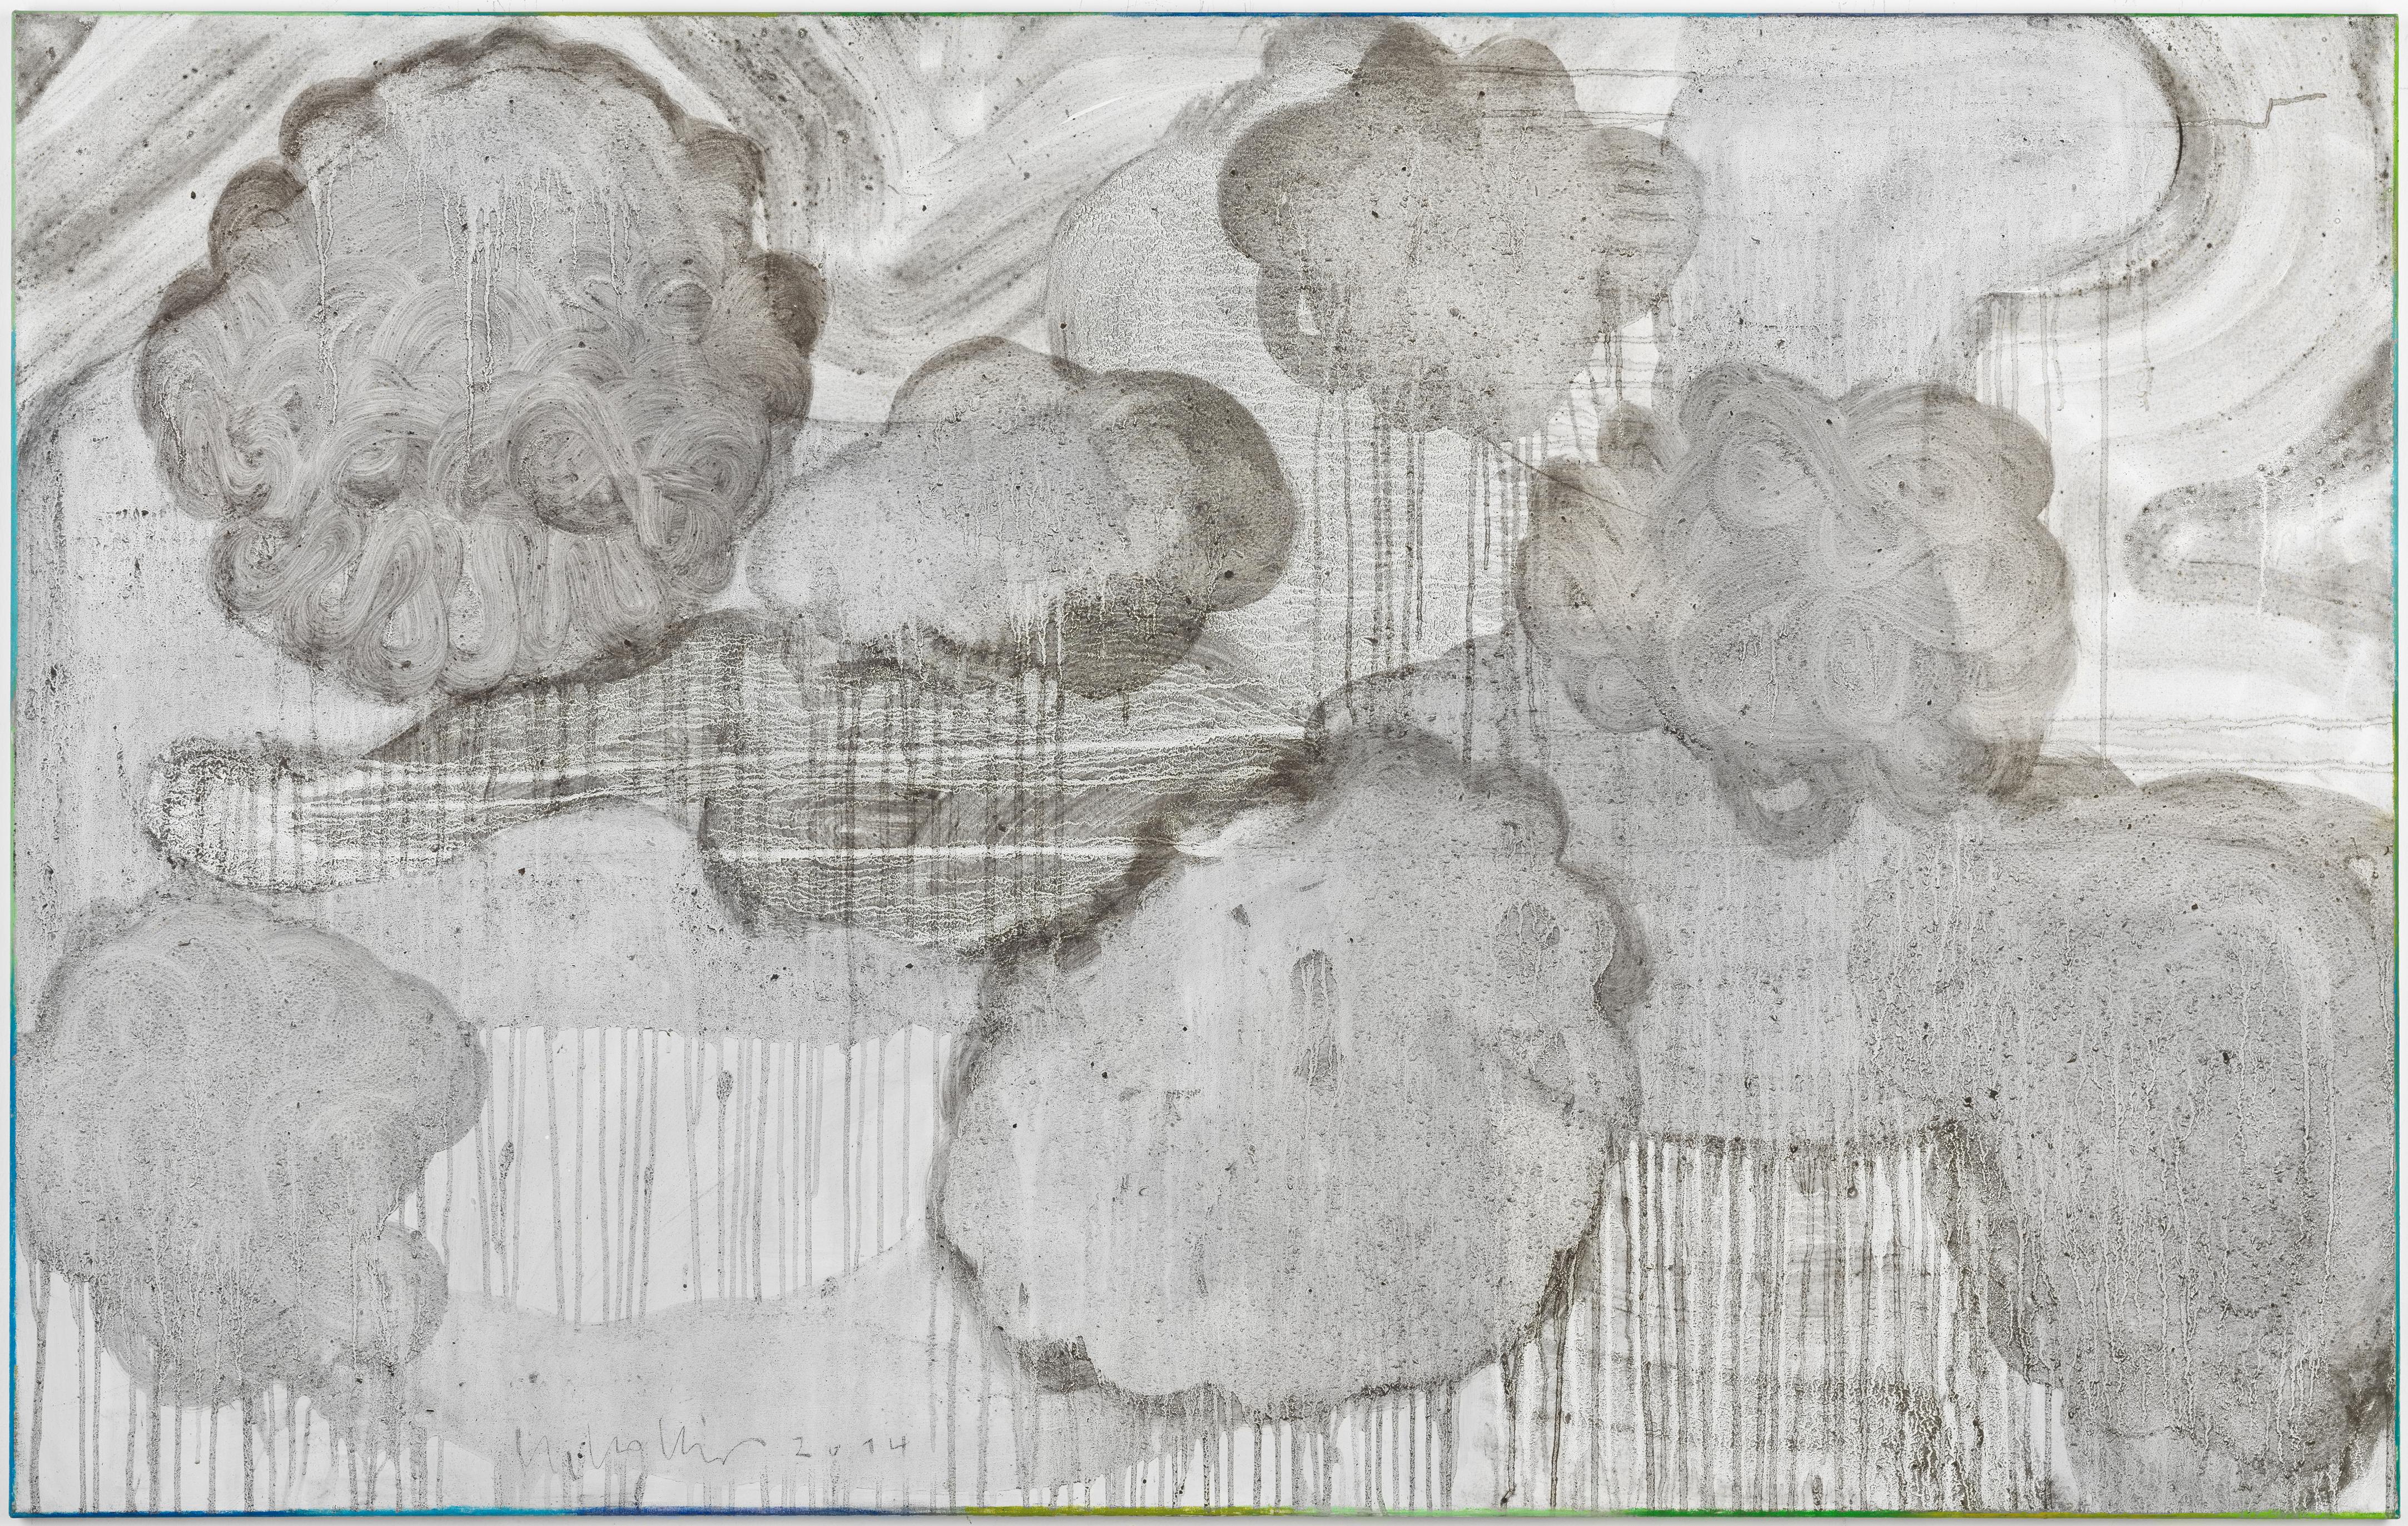 Clouds 2 // Asche in Eitempera auf Leinwand // 100 x 160 cm // 2014